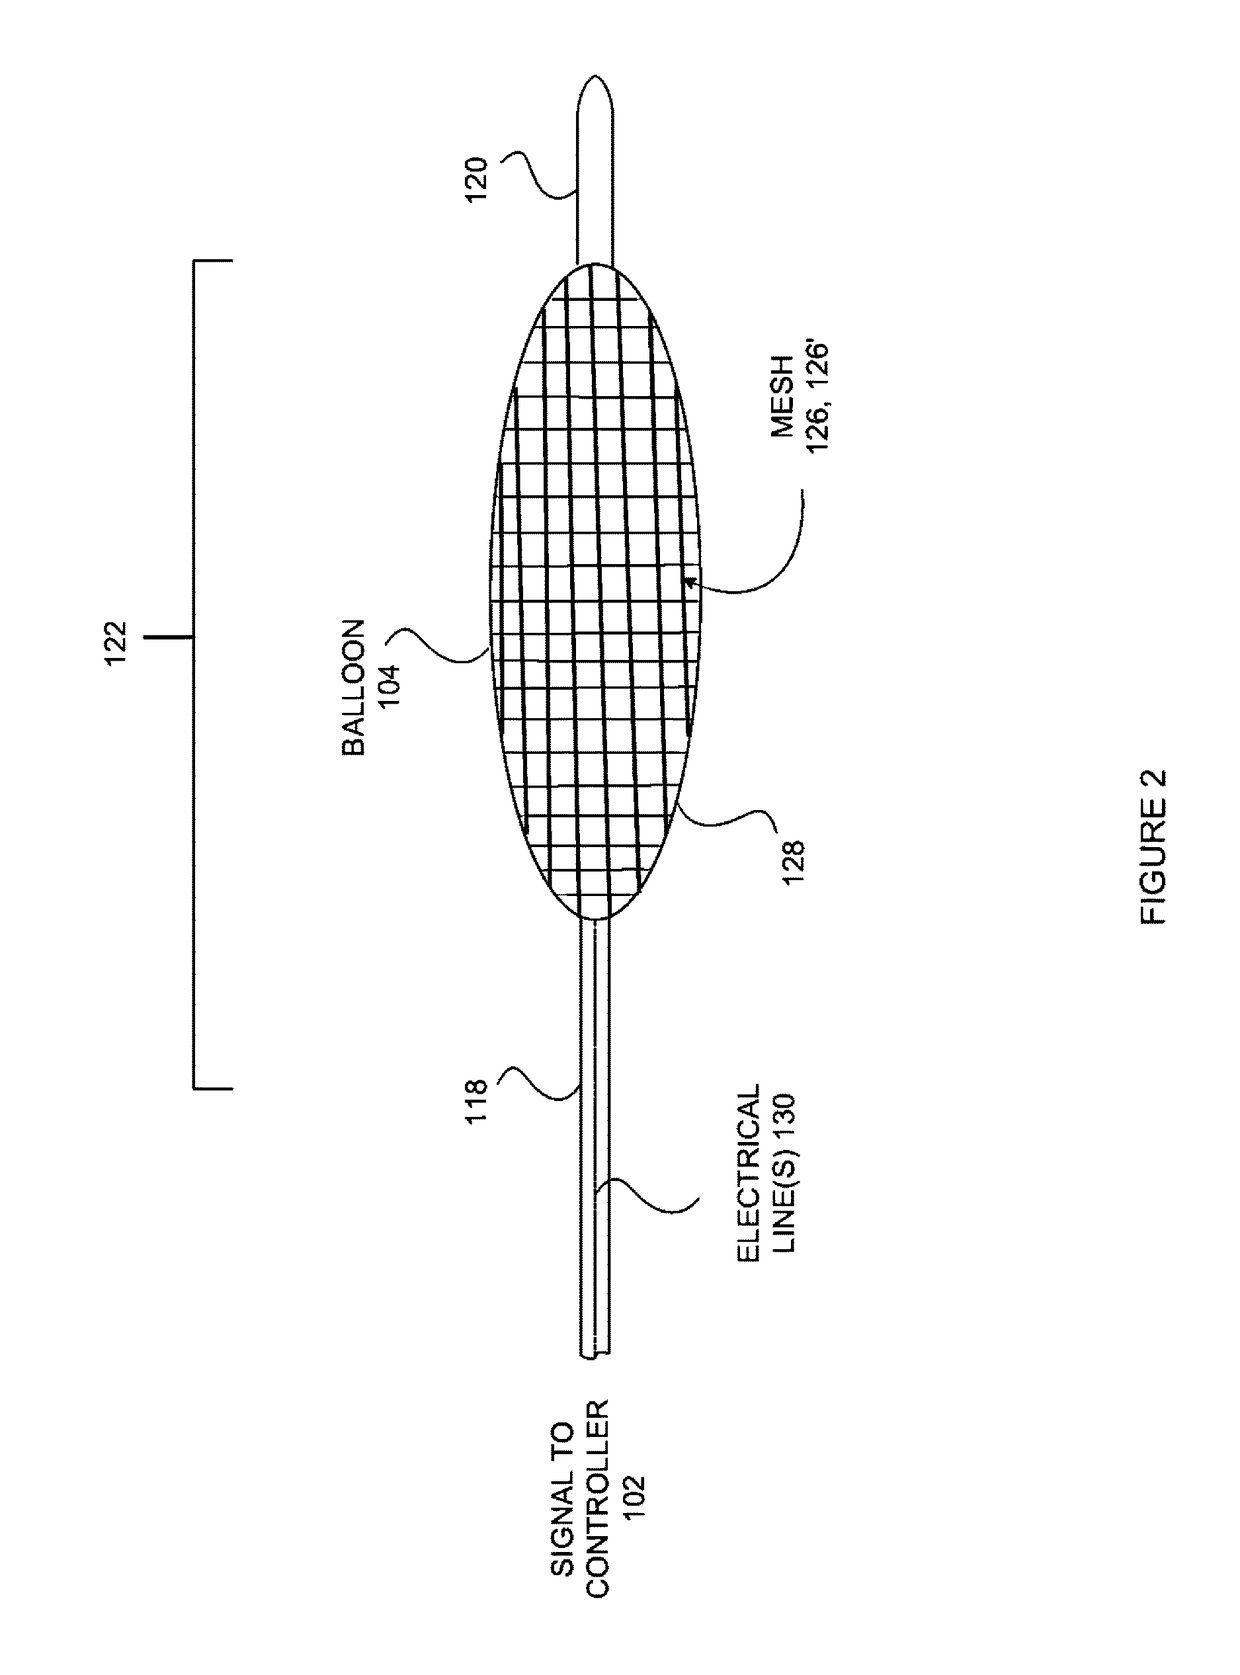 Electrically conductive balloon catheter